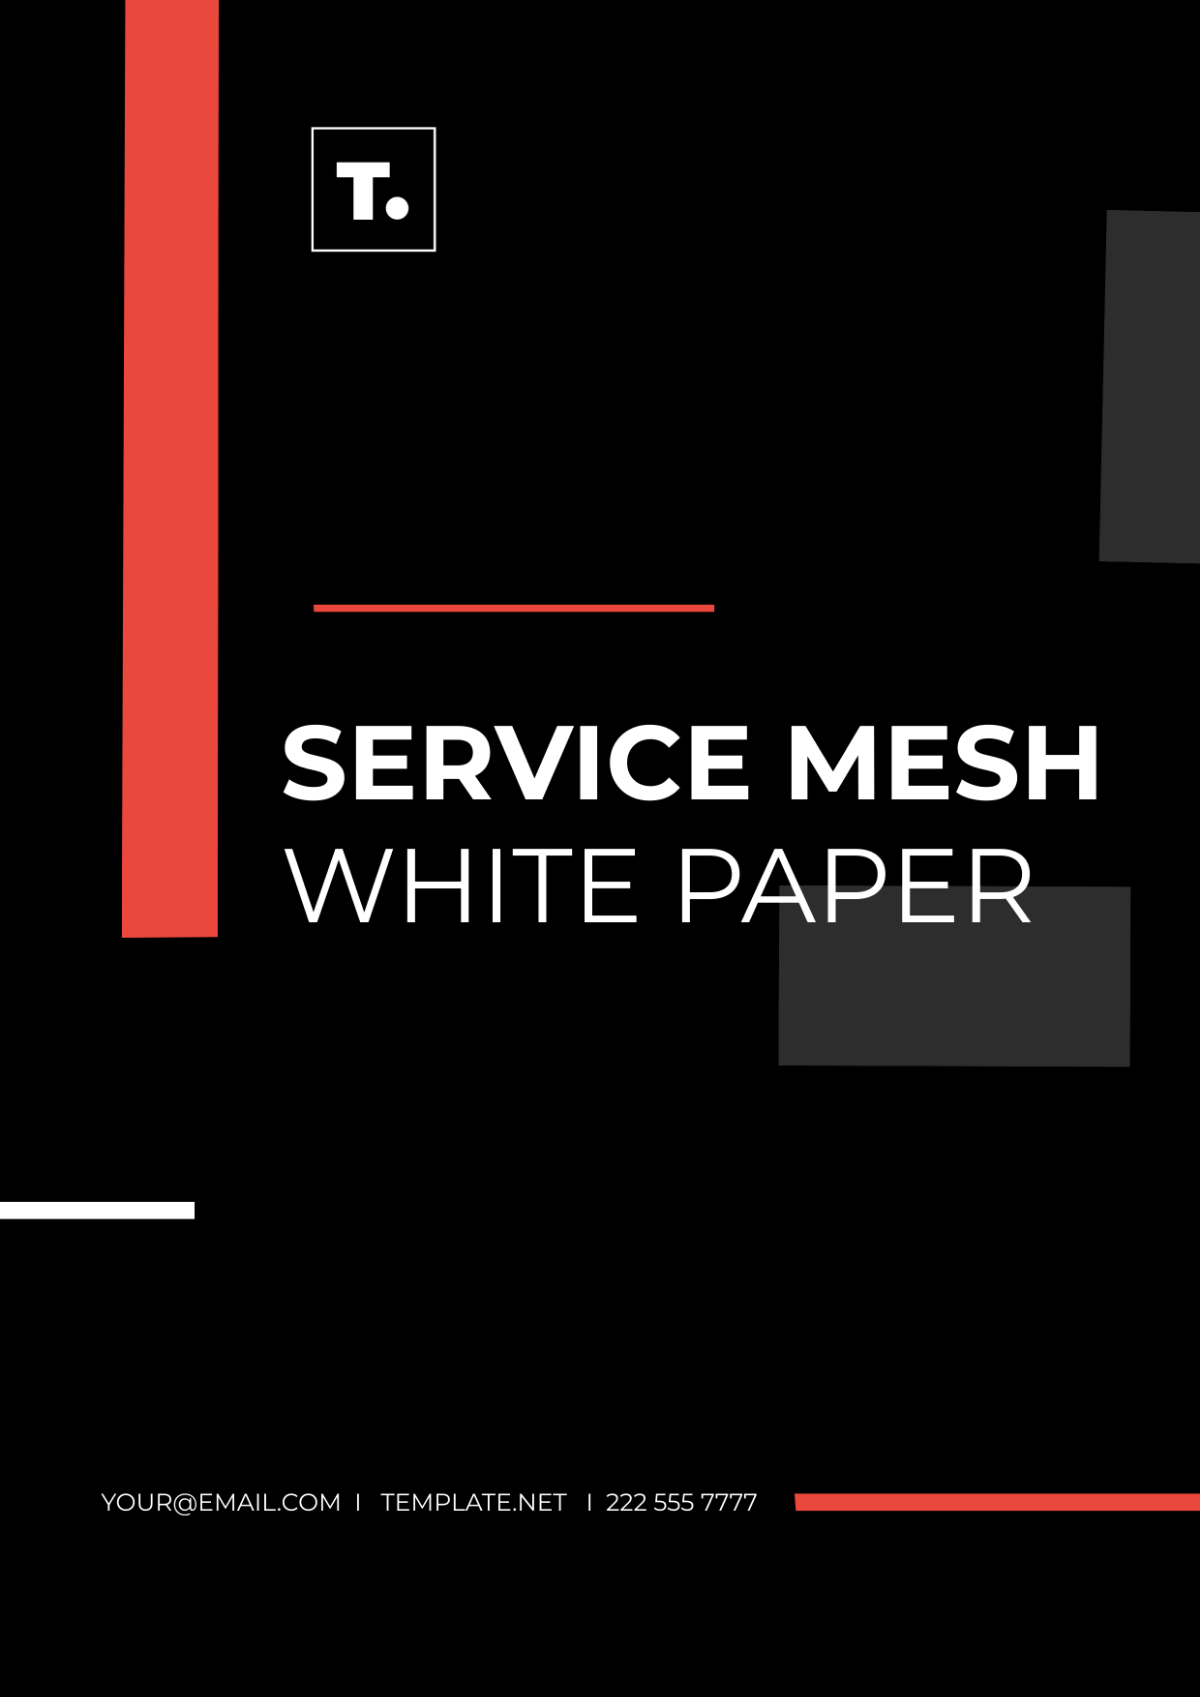 Service Mesh White Paper Template